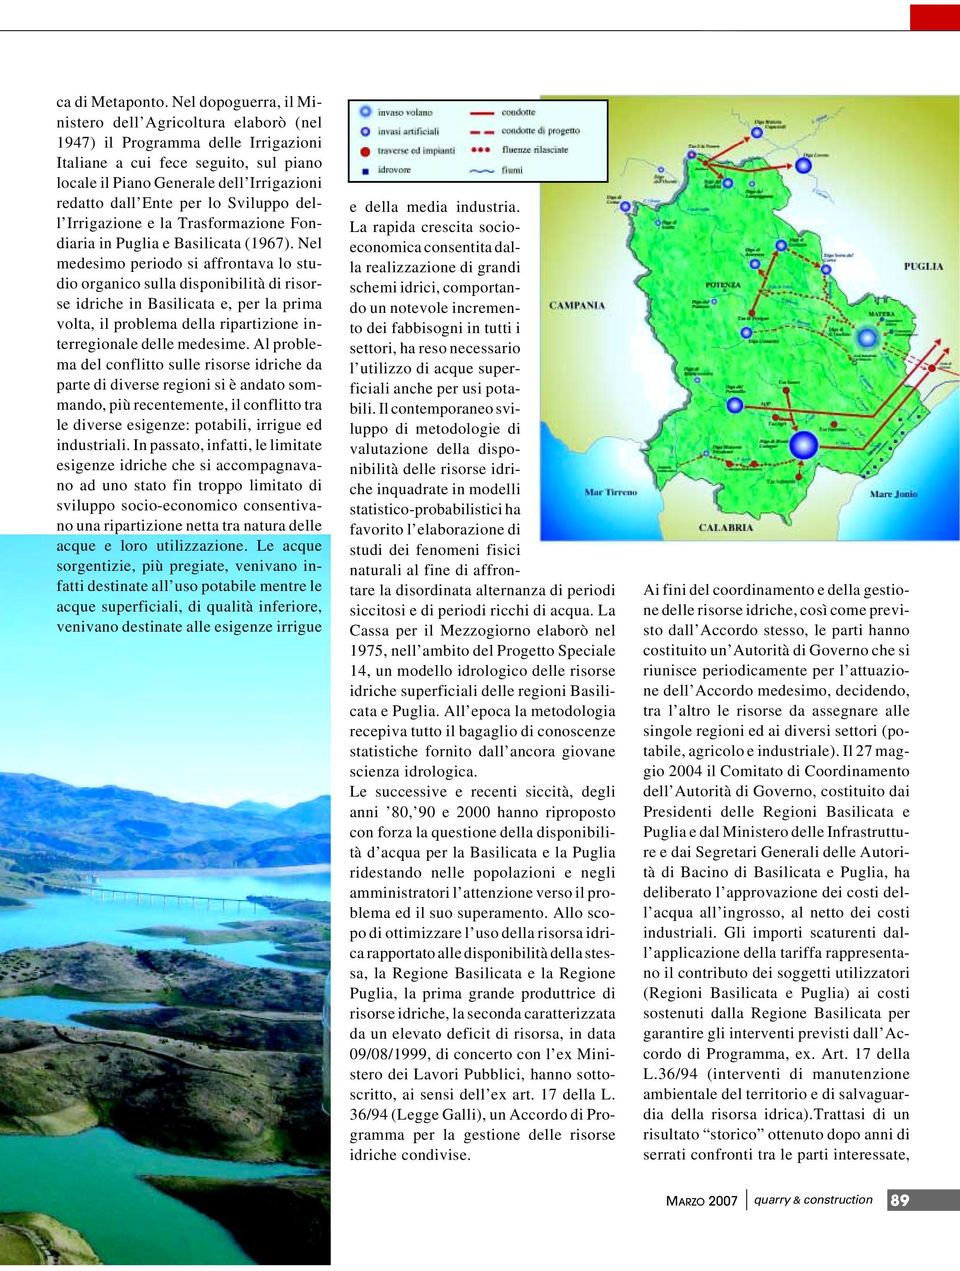 lo Sviluppo dell Irrigazione e la Trasformazione Fondiaria in Puglia e Basilicata (1967).